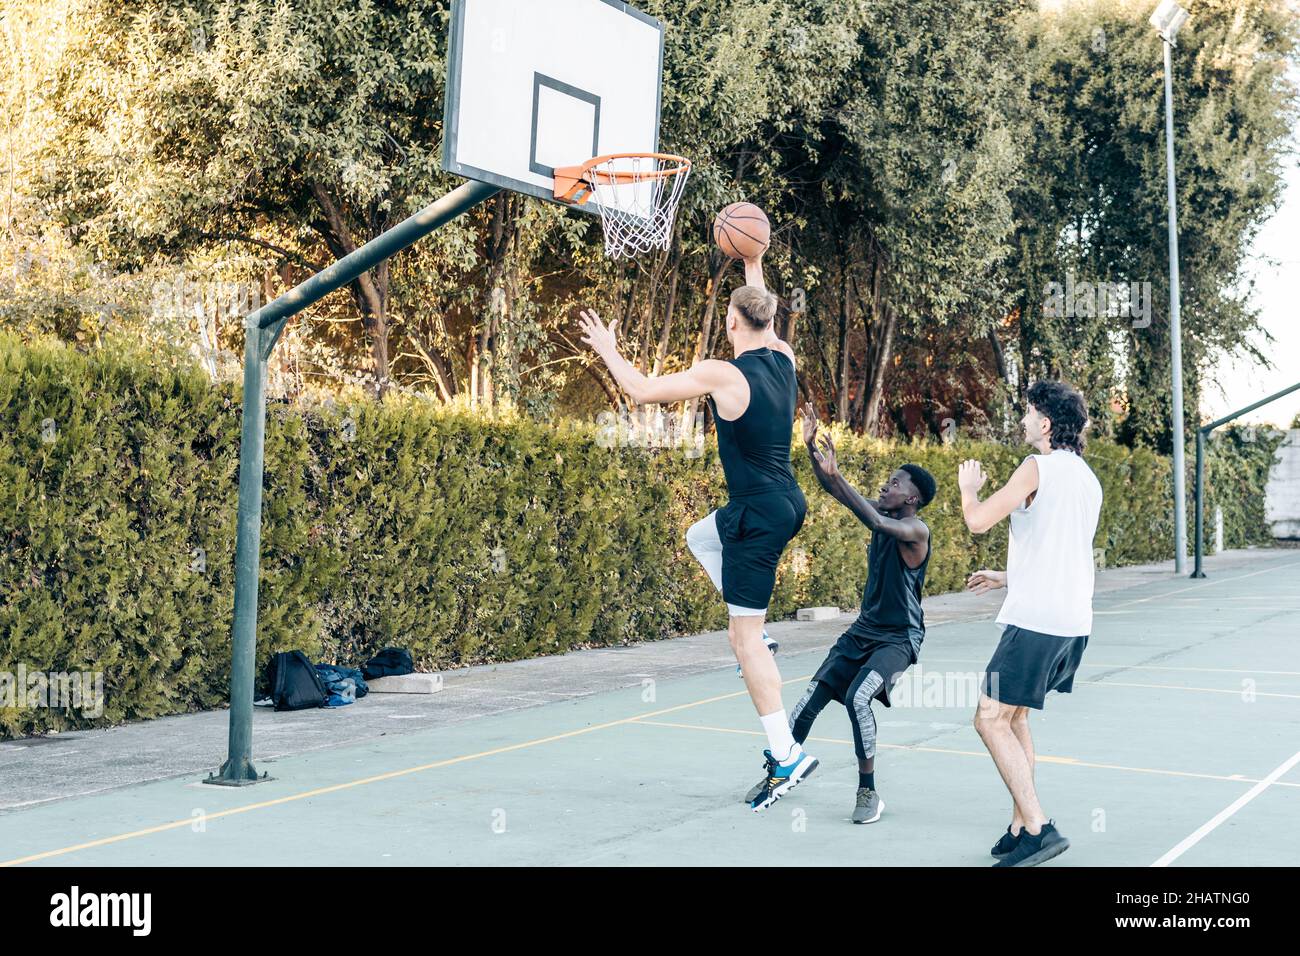 Uomo alto che salta per lanciare una palla in un cestino mentre gioca a basket con gli amici Foto Stock